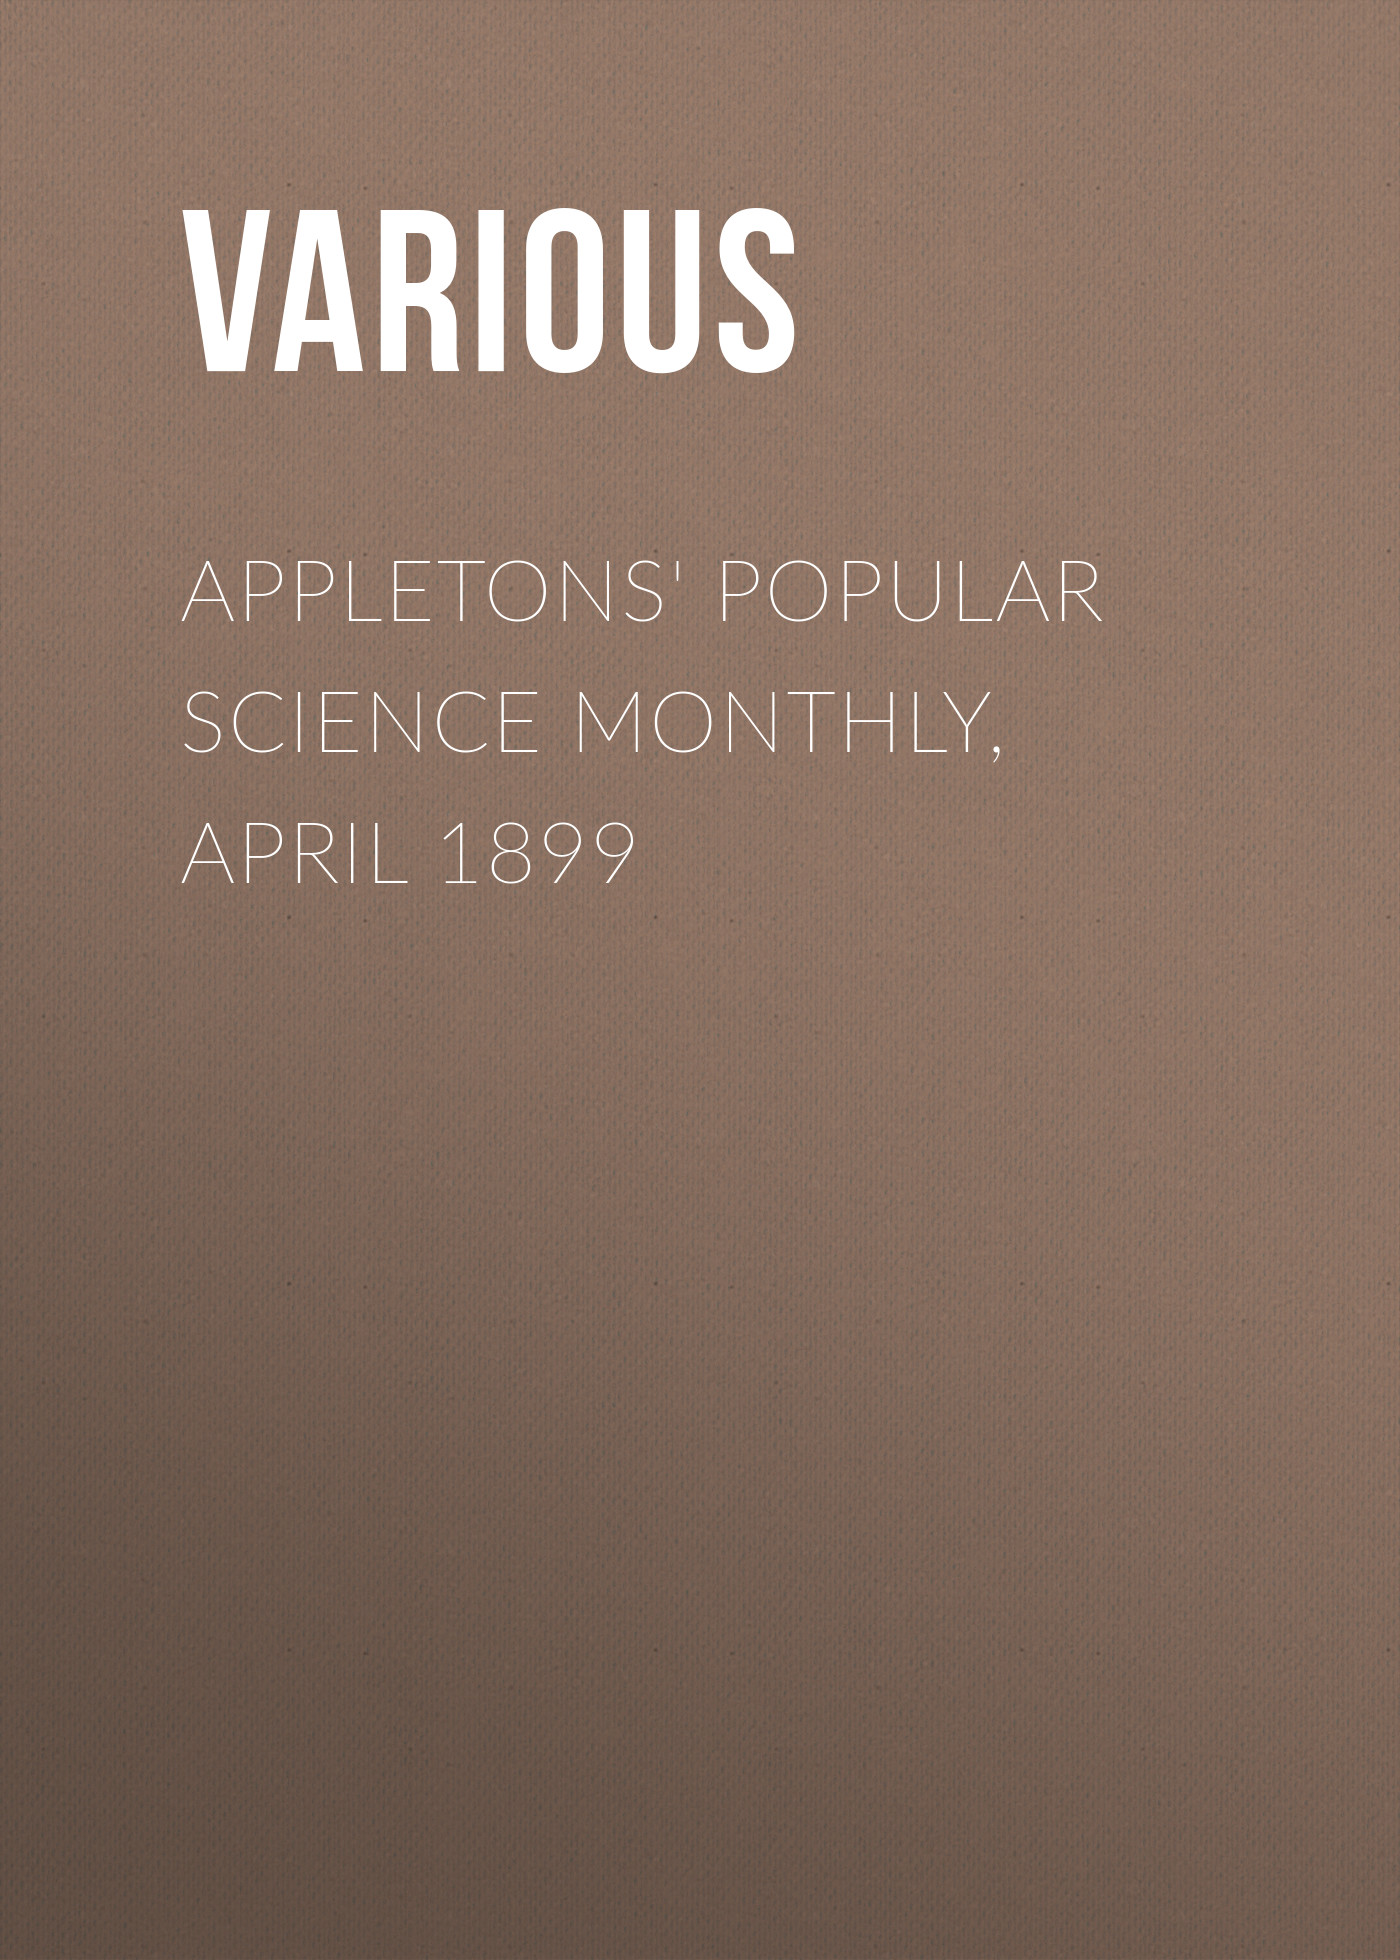 Книга Appletons' Popular Science Monthly, April 1899 из серии , созданная  Various, может относится к жанру Журналы, Зарубежная образовательная литература. Стоимость электронной книги Appletons' Popular Science Monthly, April 1899 с идентификатором 25570455 составляет 0 руб.